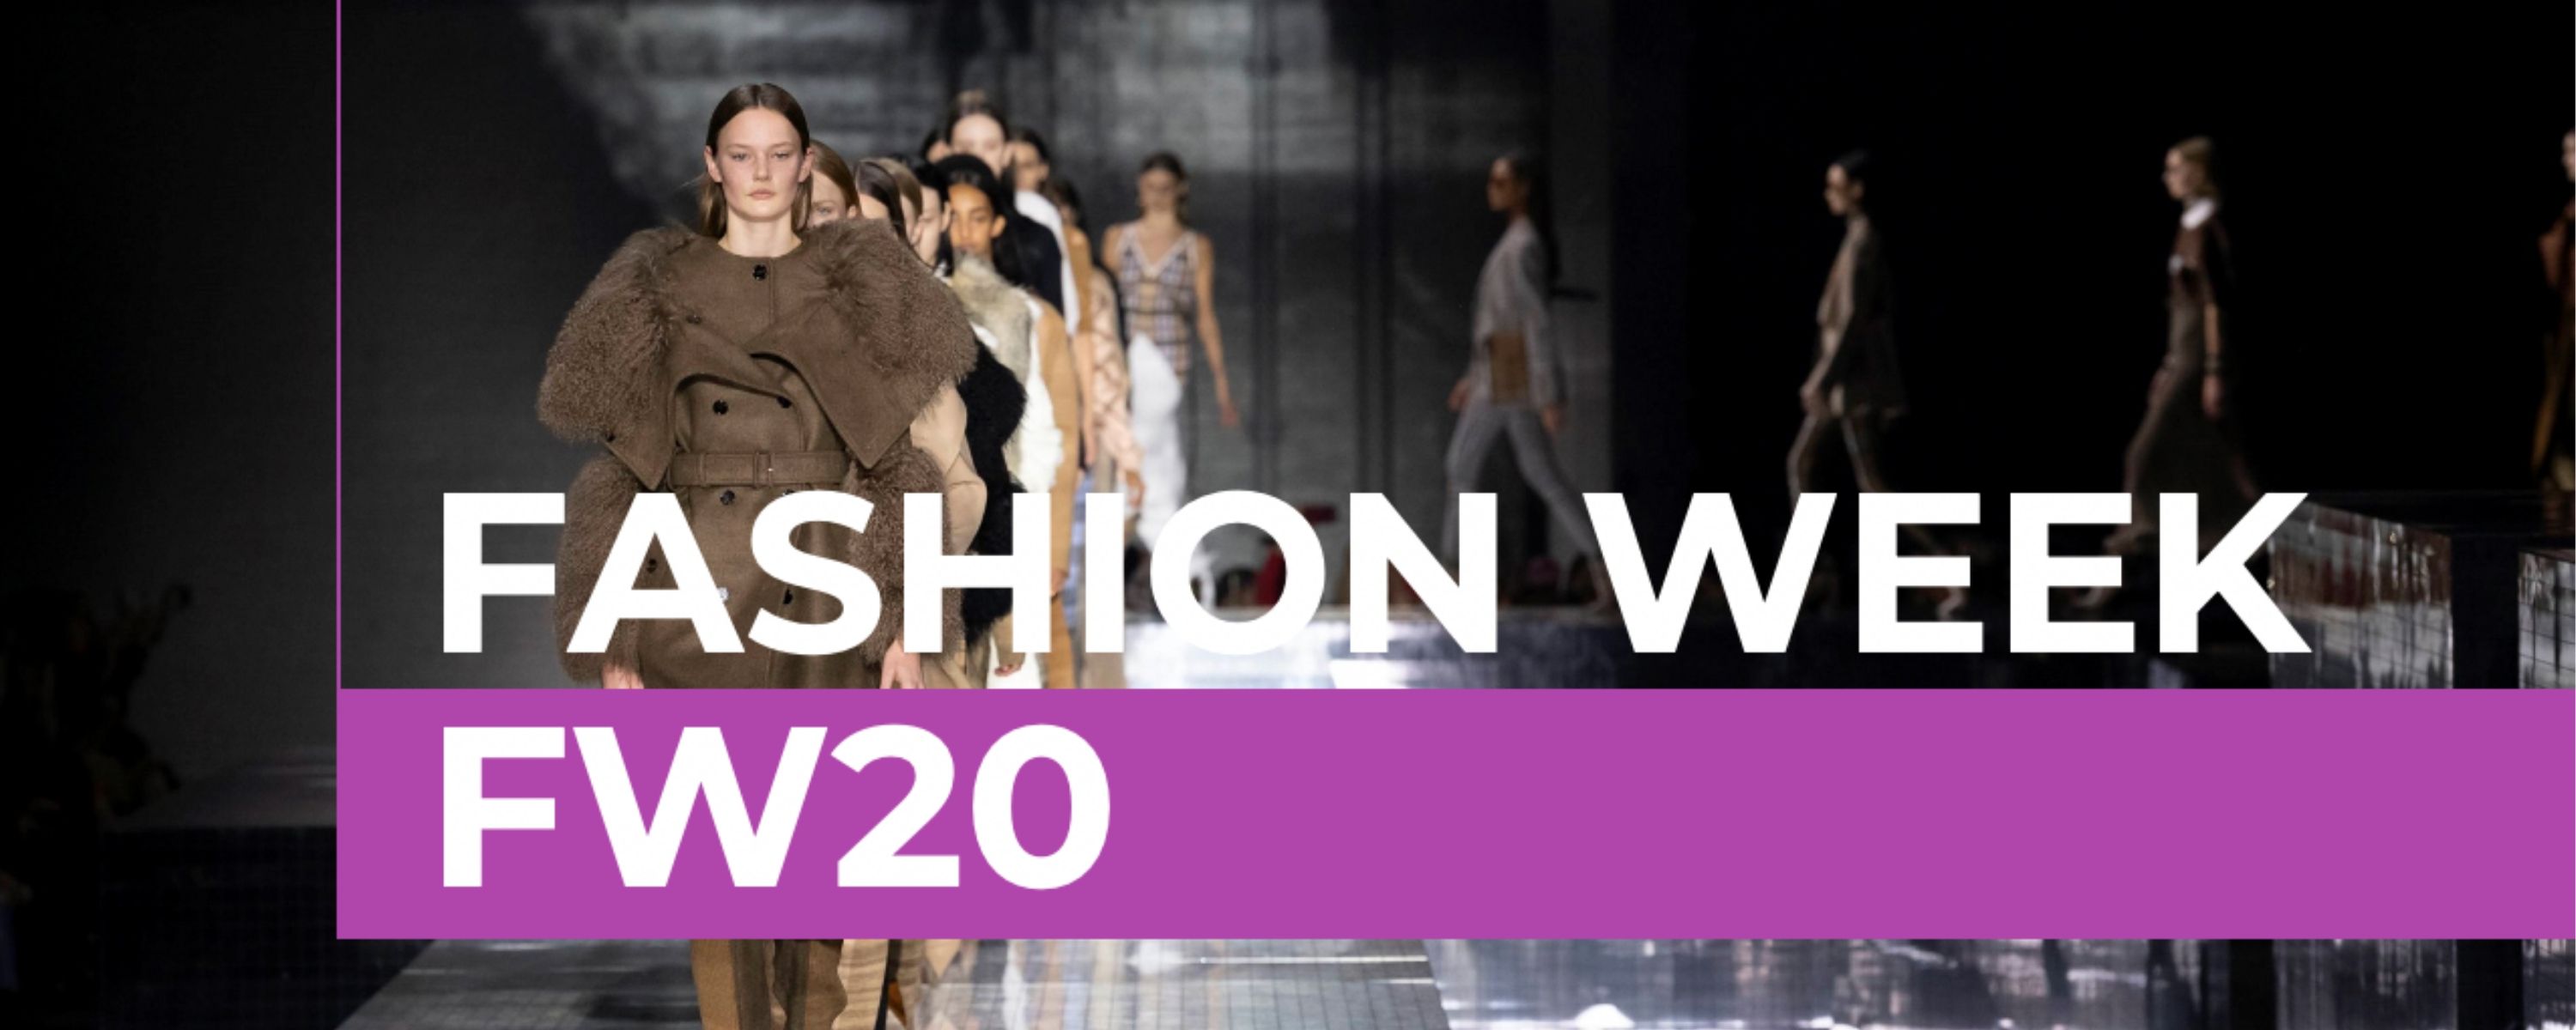 Fashion Week FW20